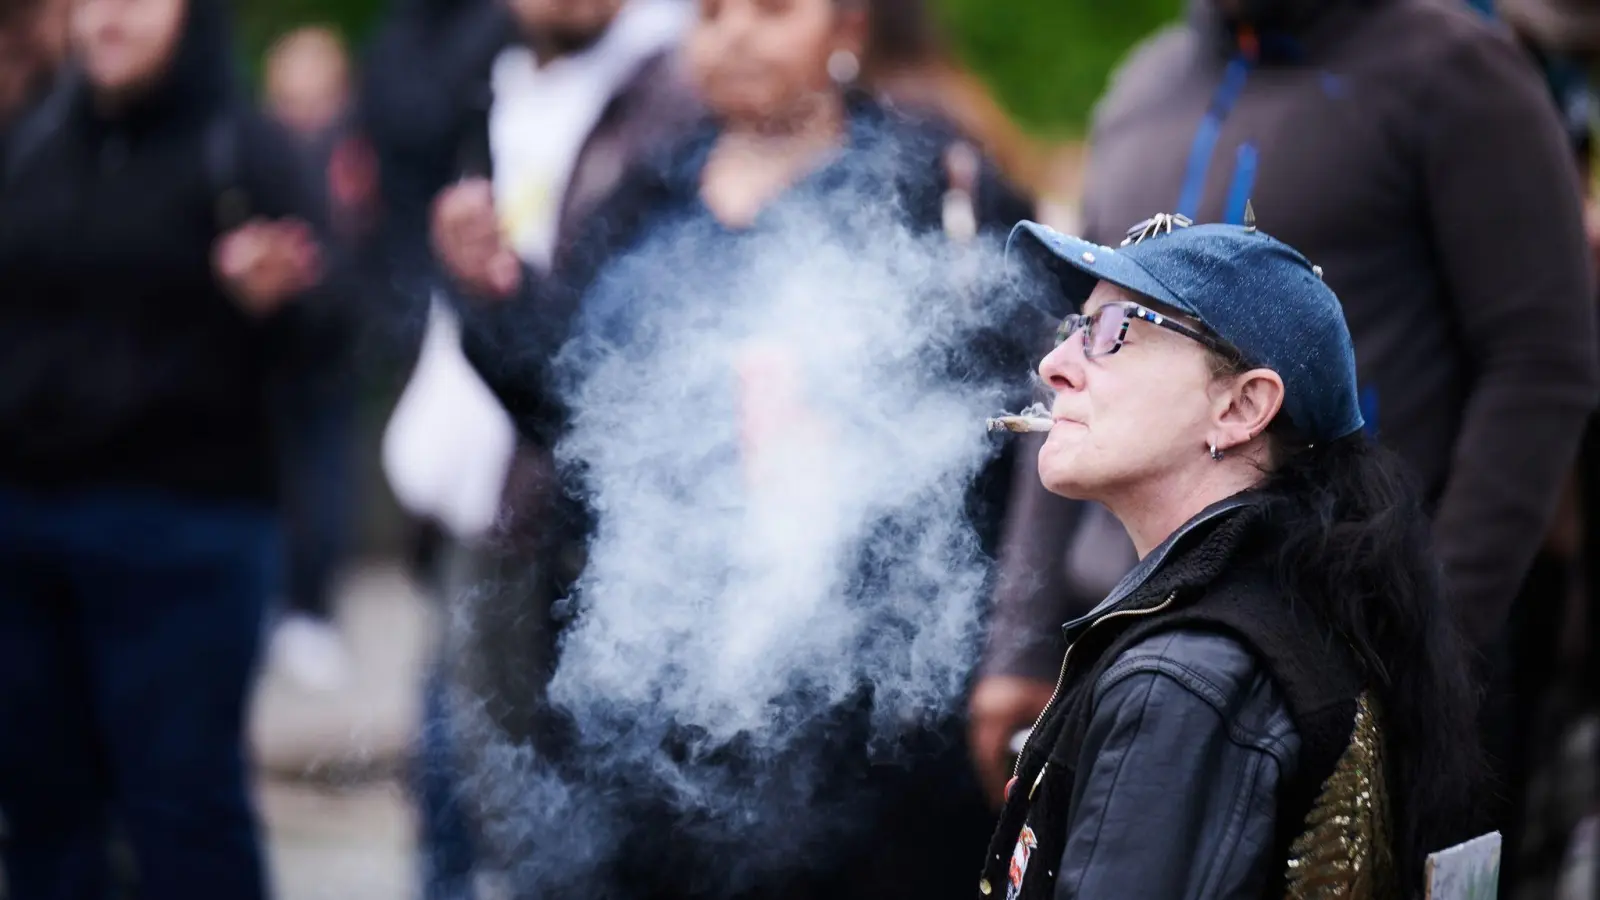 Cannabis-Rauch bei einer Demonstration für die Legalisierung der Droge - in der Debatte um Modellregionen für die kontrollierte Abgabe kommen Bedenken aus Nordrhein-Westfalens Gesundheitsministerium. (Foto: Annette Riedl/dpa)